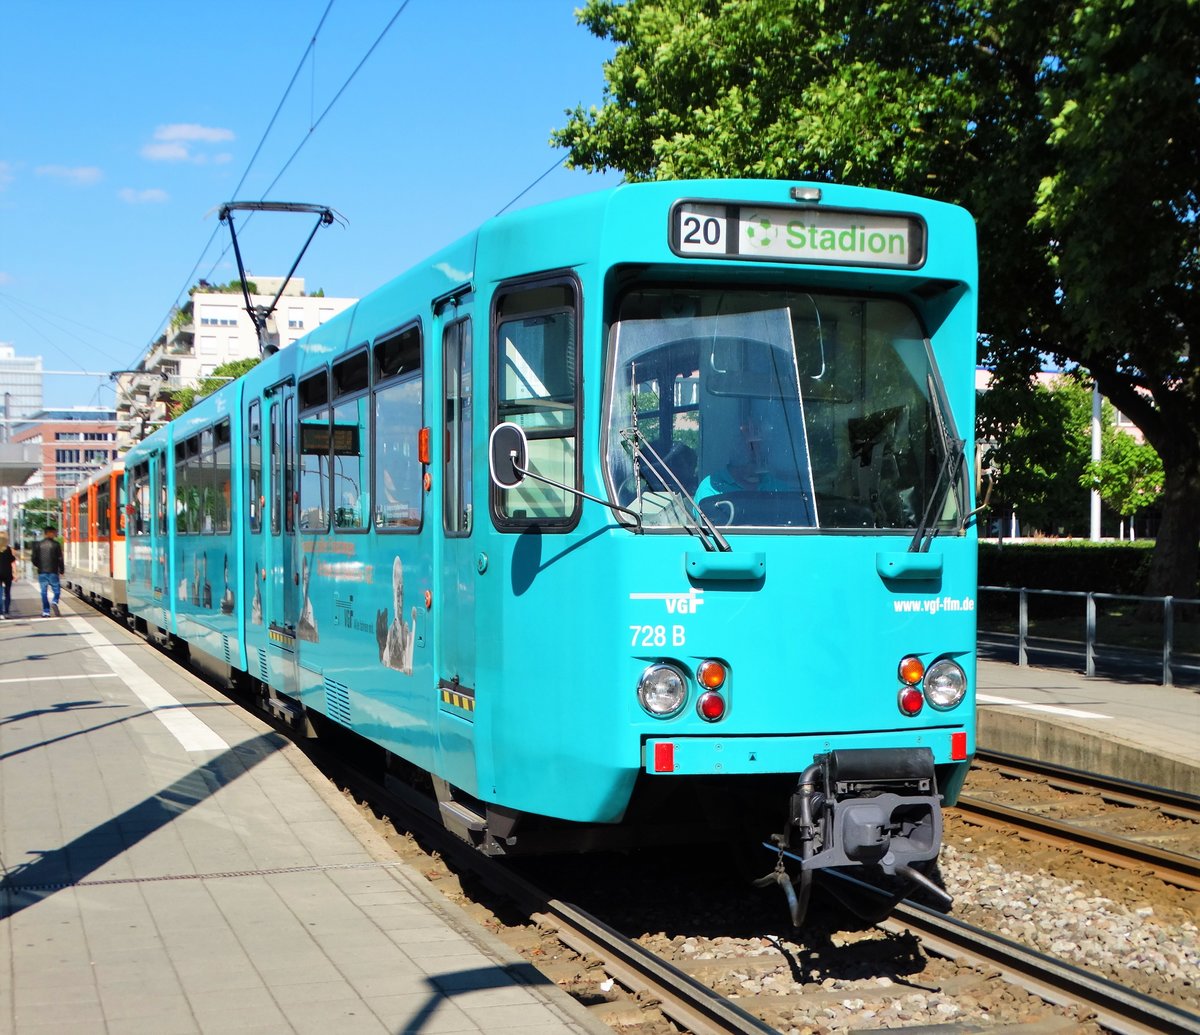 VGF Düwag Pt Wagen 728 und 148 auf der Linie 20 in Frankfurt am Main Uni Klinikum am 24.06.17